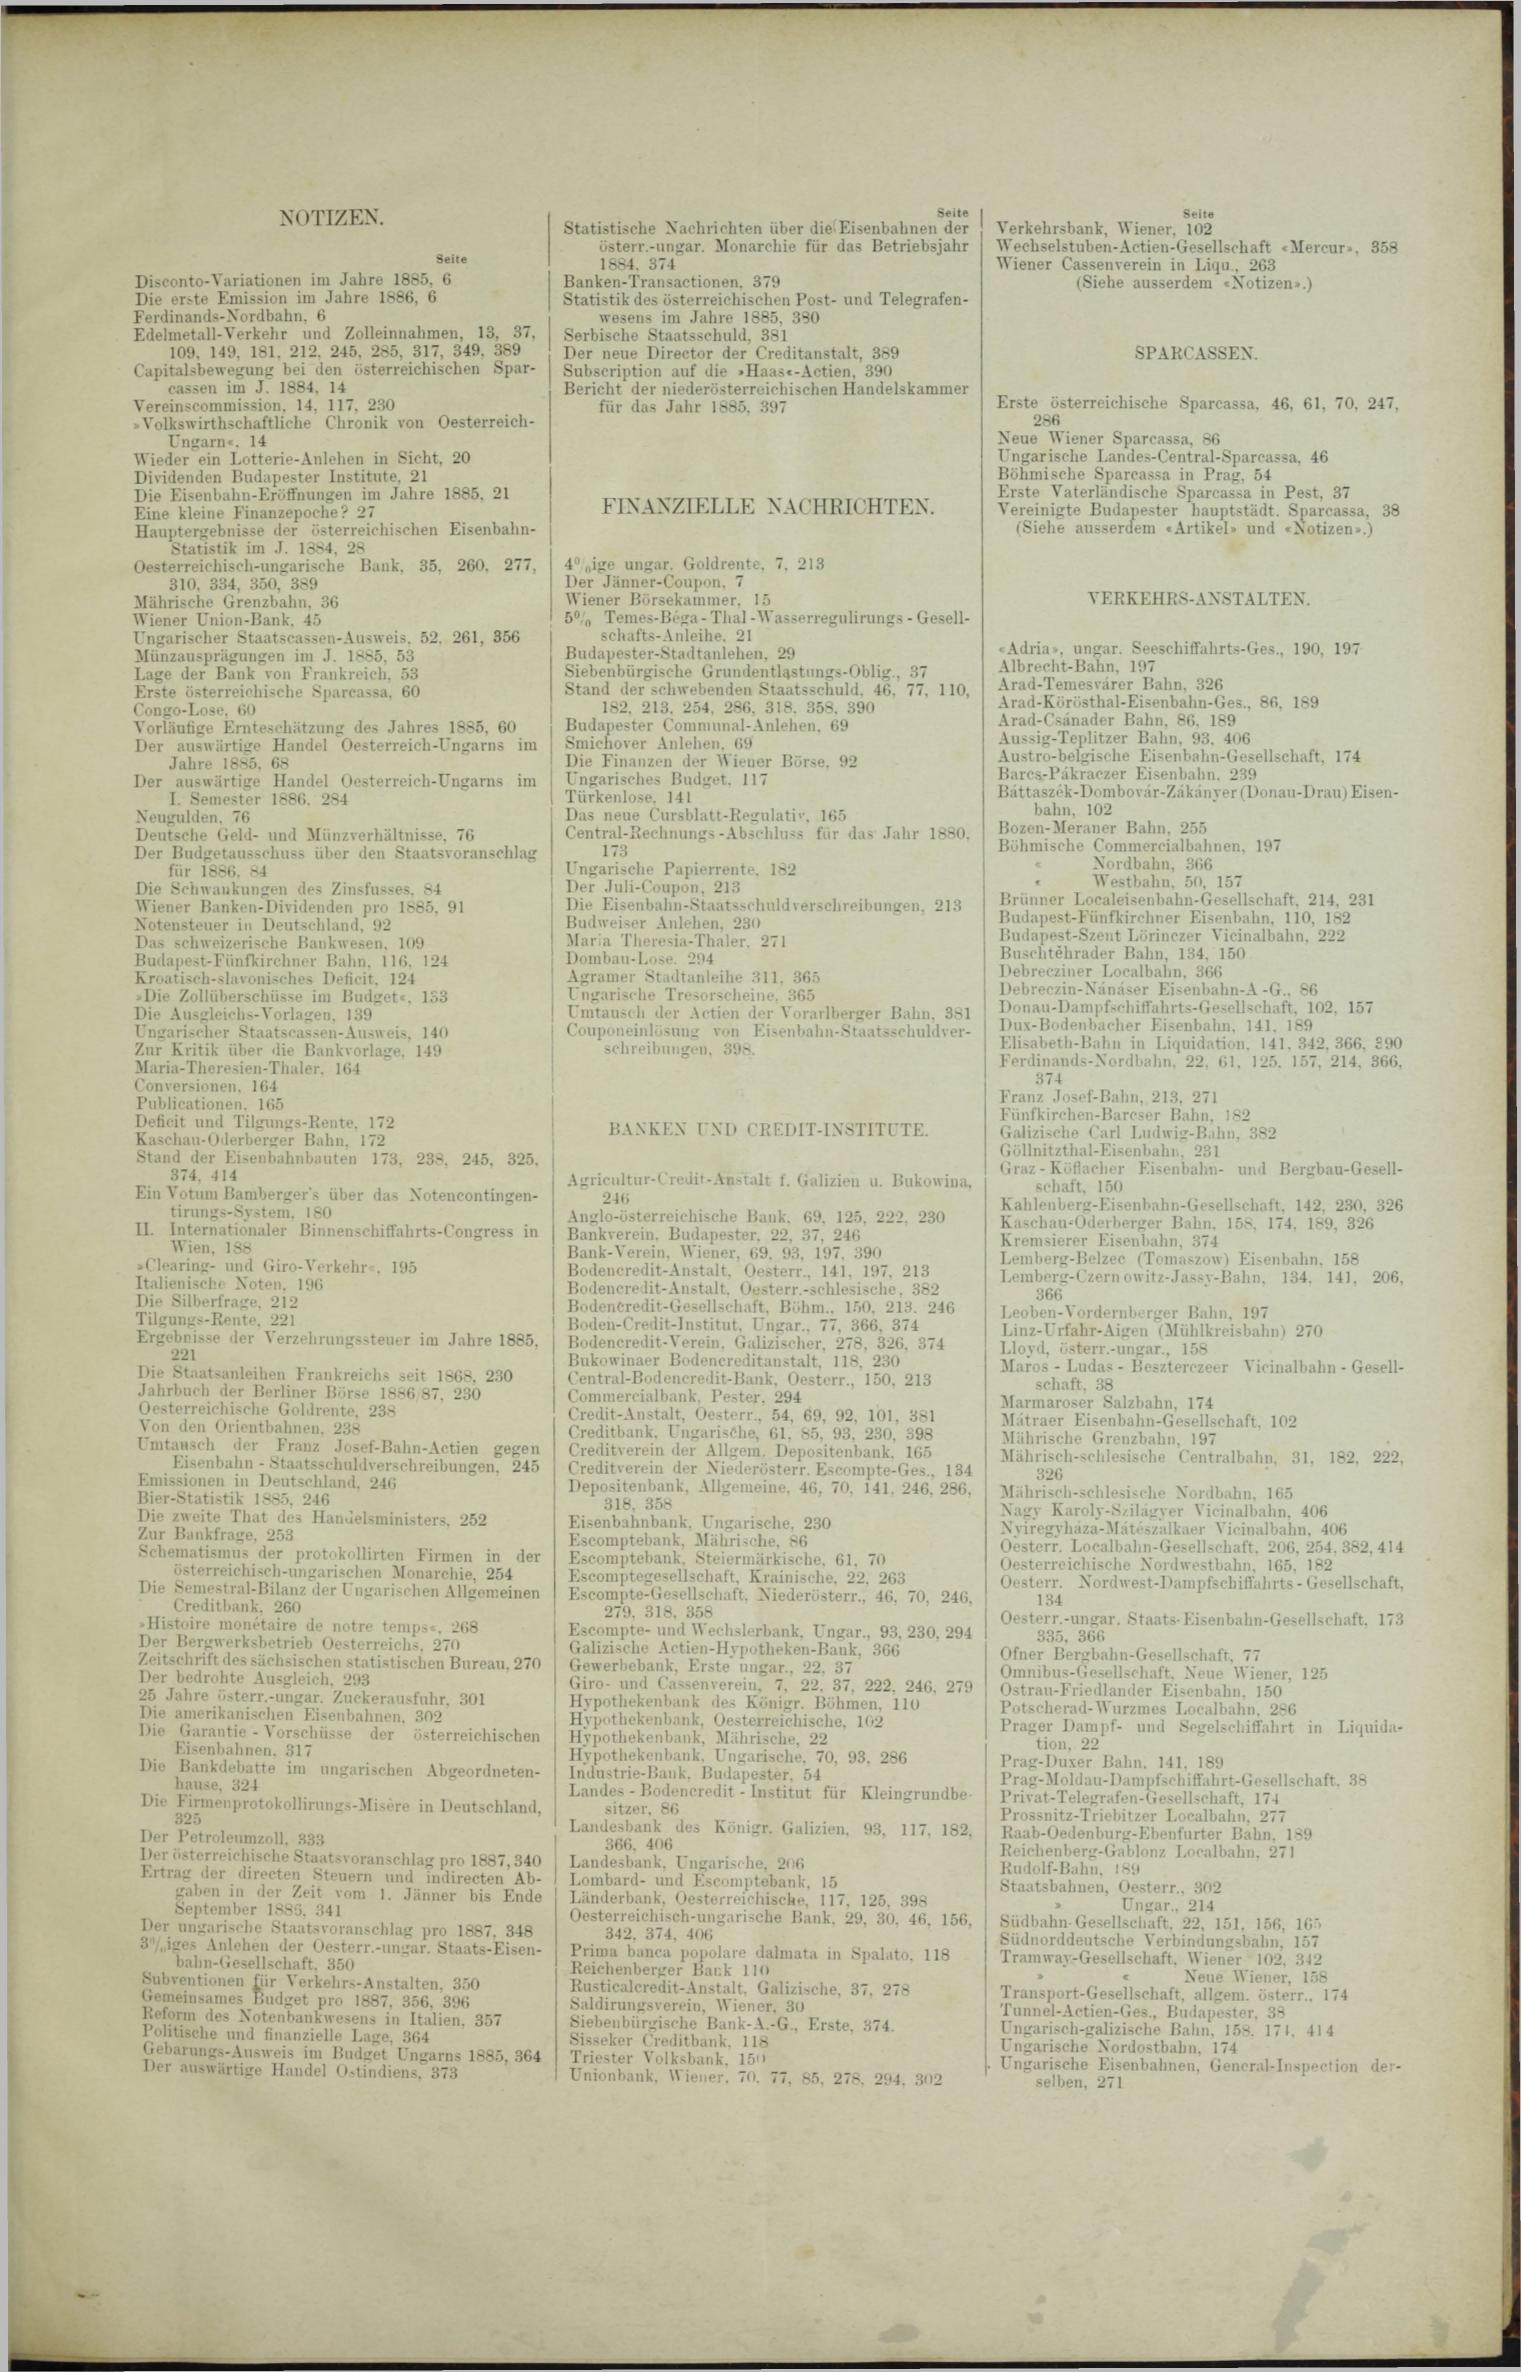 Der Tresor 04.03.1886 - Seite 11